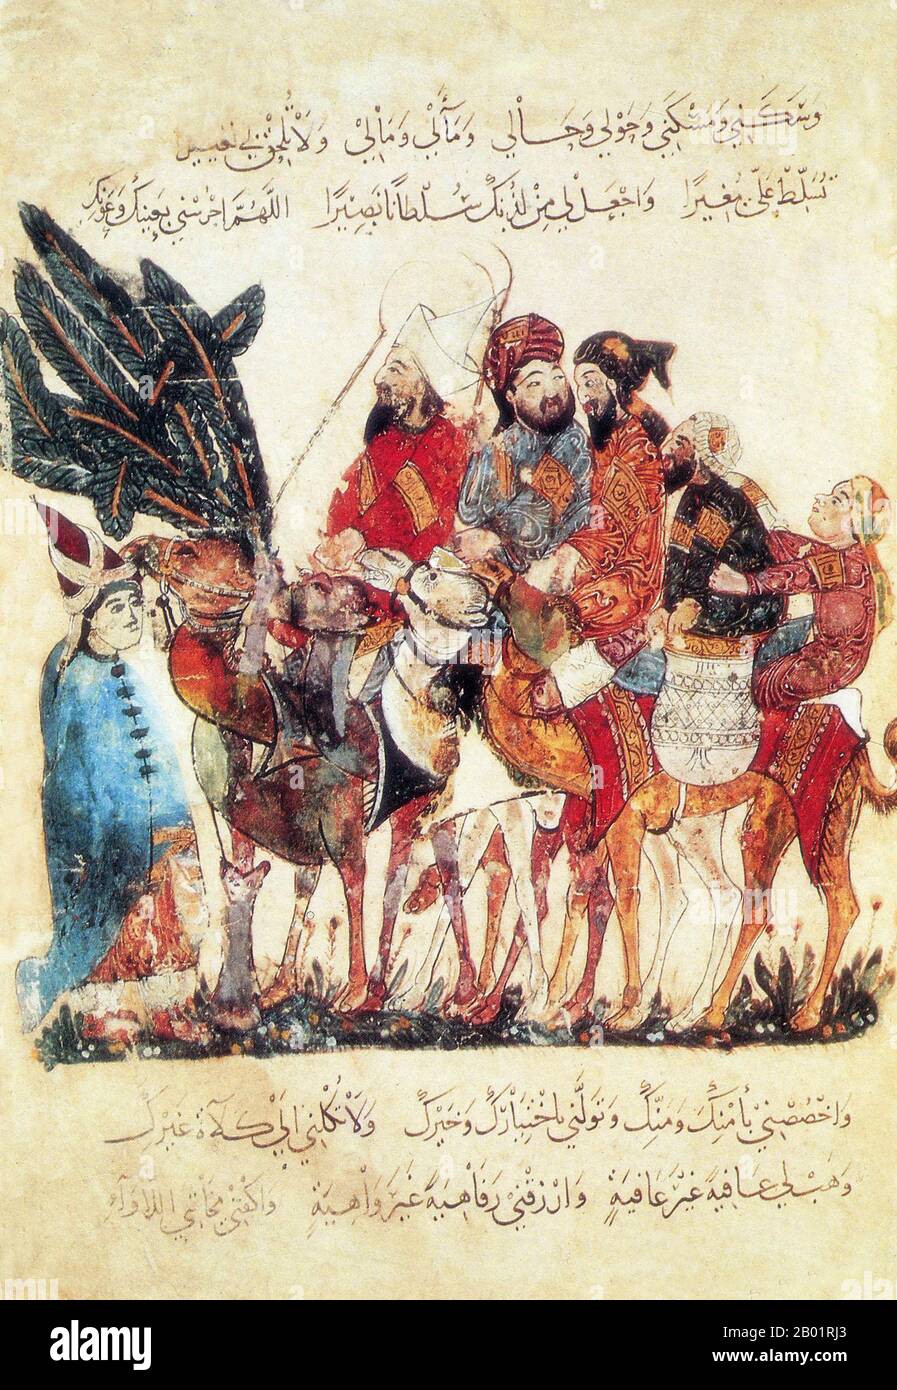 Irak : marchands dans une caravane de chameaux. Peinture miniature de Yahya ibn Mahmud al-Wasiti, 1237 EC. Yahyâ ibn Mahmûd al-Wâsitî est un artiste arabo-islamique du 13e siècle. Al-Wasiti est né à Wasit dans le sud de l'Irak. Il est connu pour ses illustrations du Maqam d'al-Hariri. Les Maqāma (littéralement « assemblées ») sont un genre littéraire arabe (à l'origine) de prose rimée avec des intervalles de poésie dans lesquels l'extravagance rhétorique est évidente. L'auteur du 10e siècle Badī' al-Zaman al-Hamadhāni aurait inventé la forme, qui a été étendue par al-Hariri de Bassorah au siècle suivant. Banque D'Images